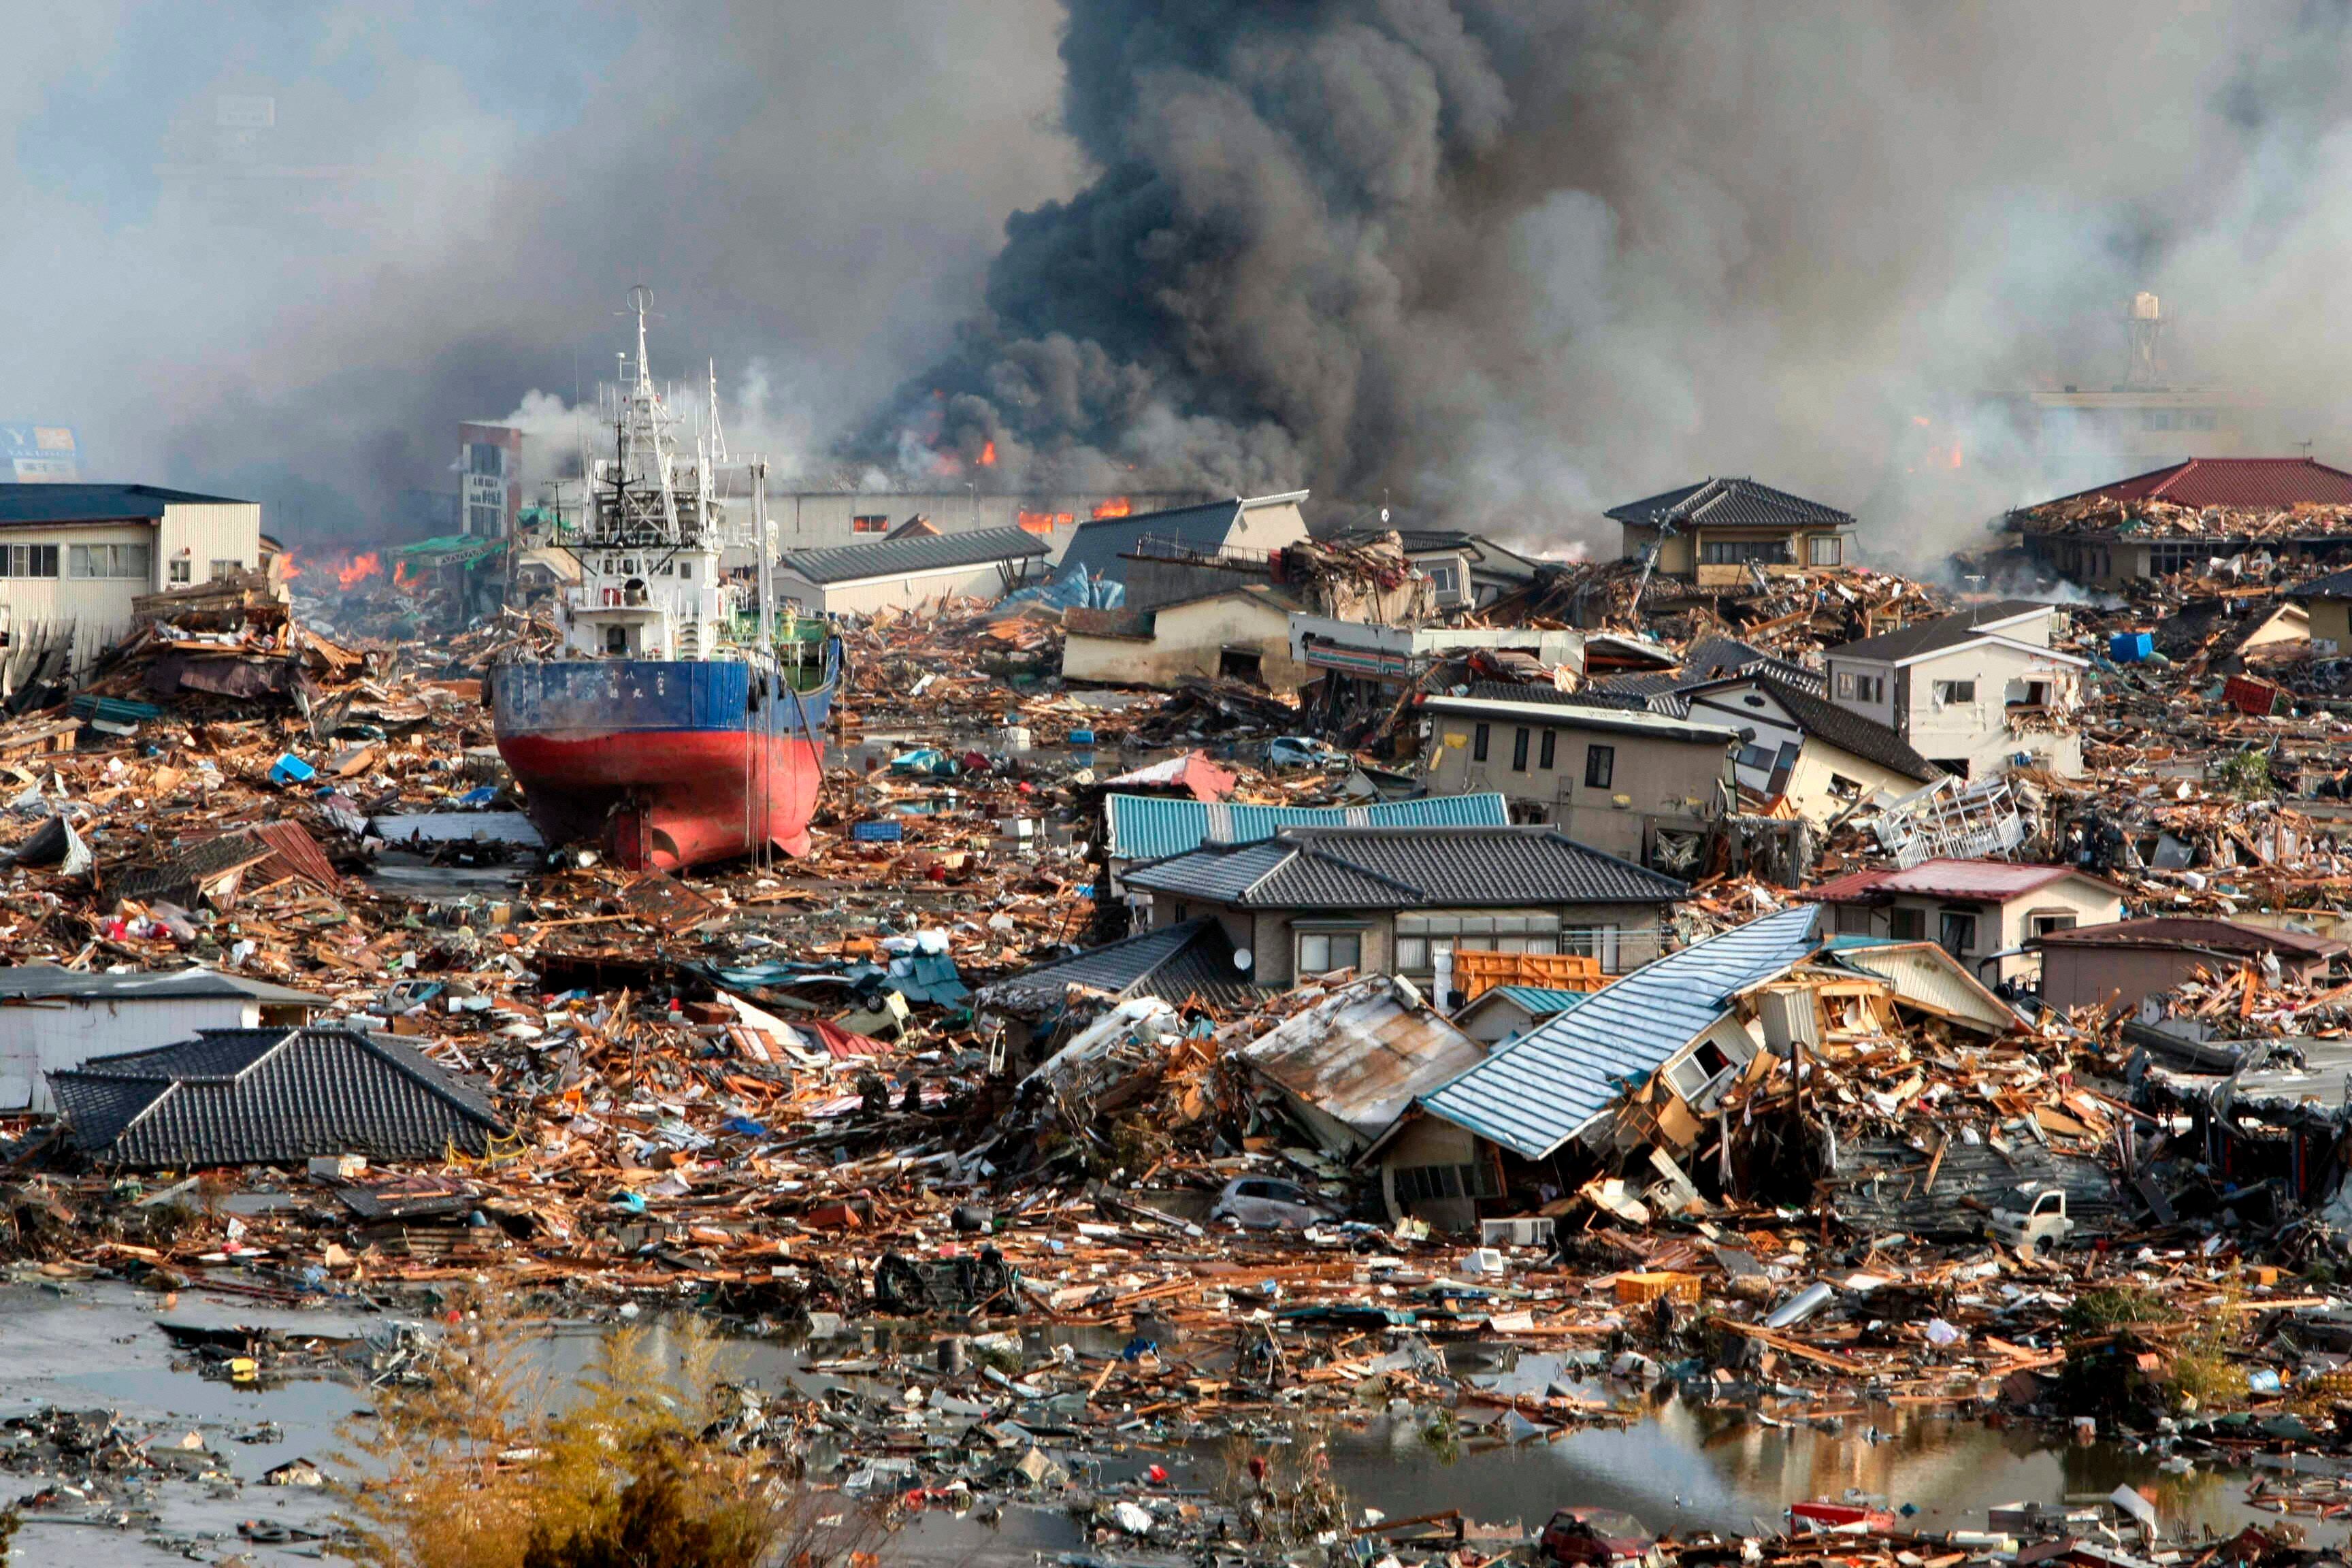 Escombros en la localidad de Kisenuma en la región de Miyagi (Japón) tras el tsunami provocado por el terremoto de 8,8 grados de magnitud que arrasó parte de la costa noreste de Japón, causando más de 15.000 muertes, miles de desaparecidos y un accidente nuclear en la central nuclear de Fukushima (EFE/STR)